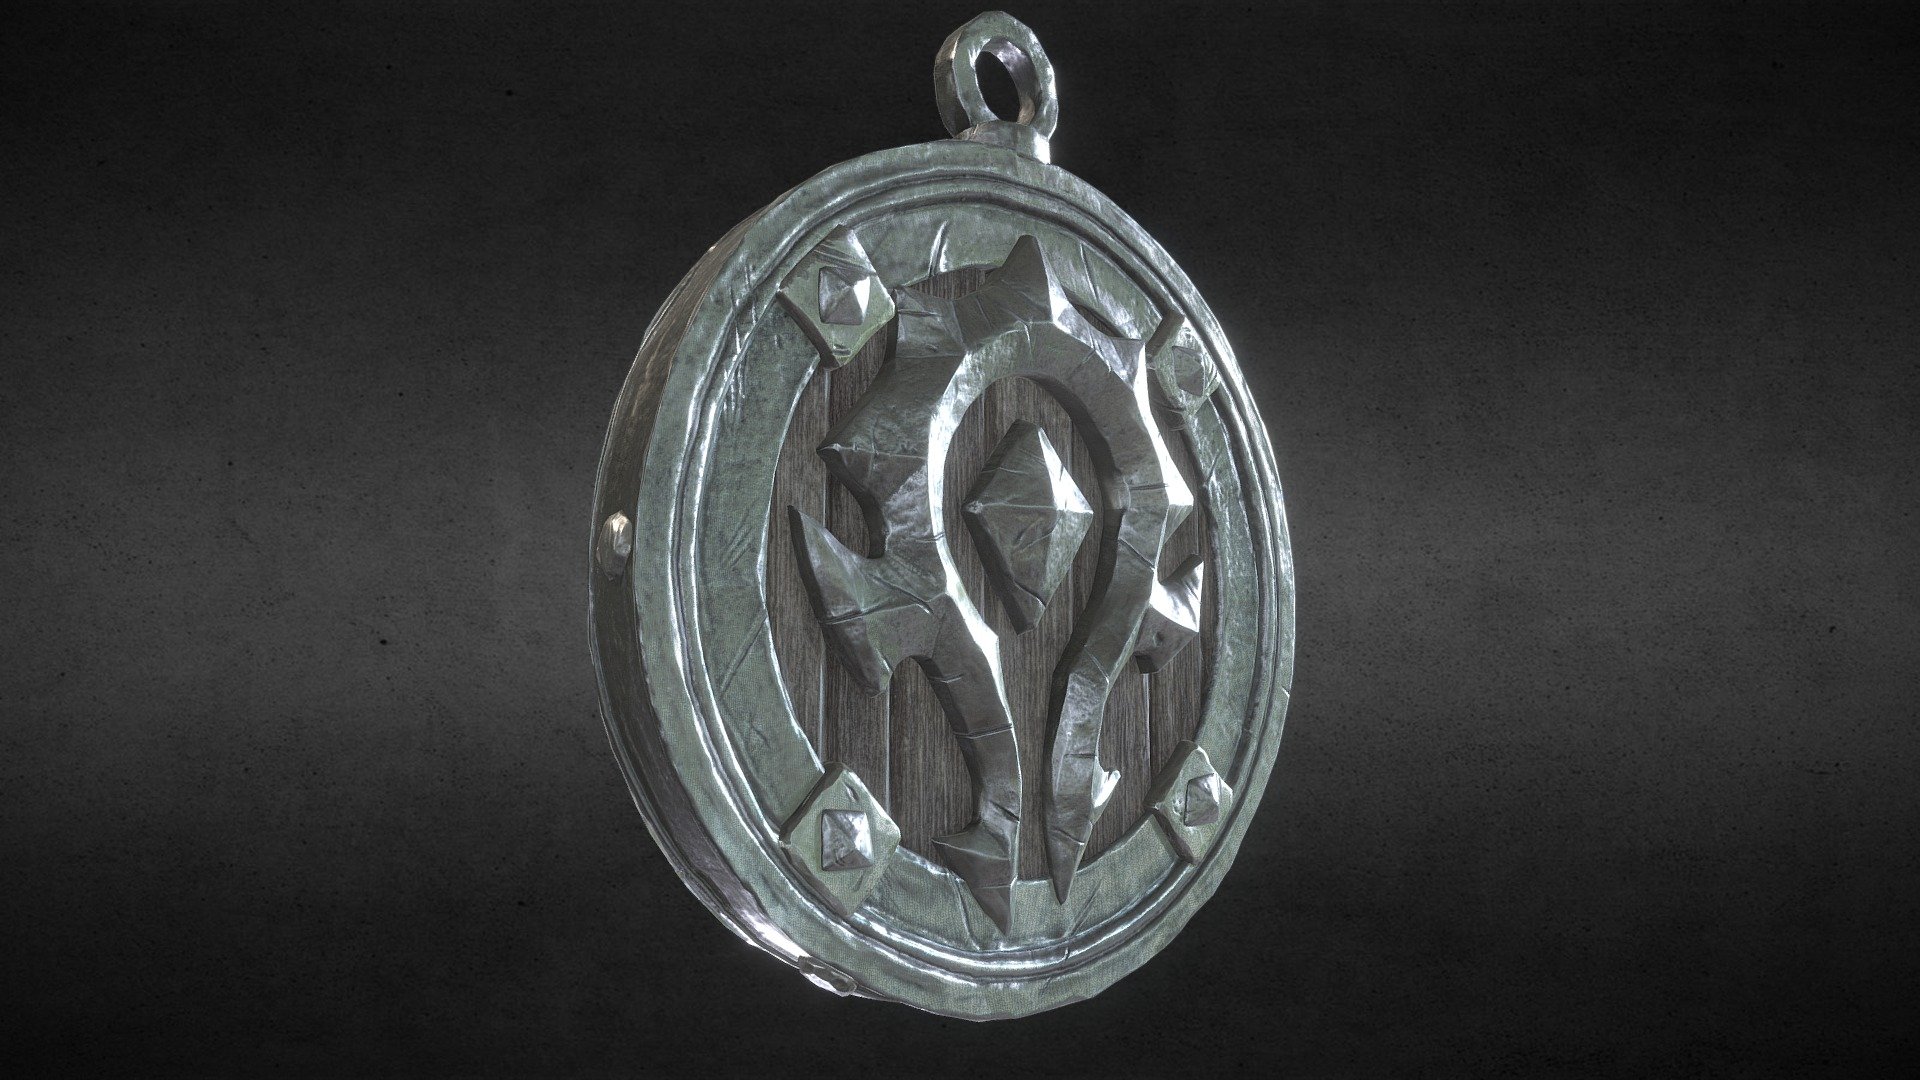 Horde/Alliance medalion